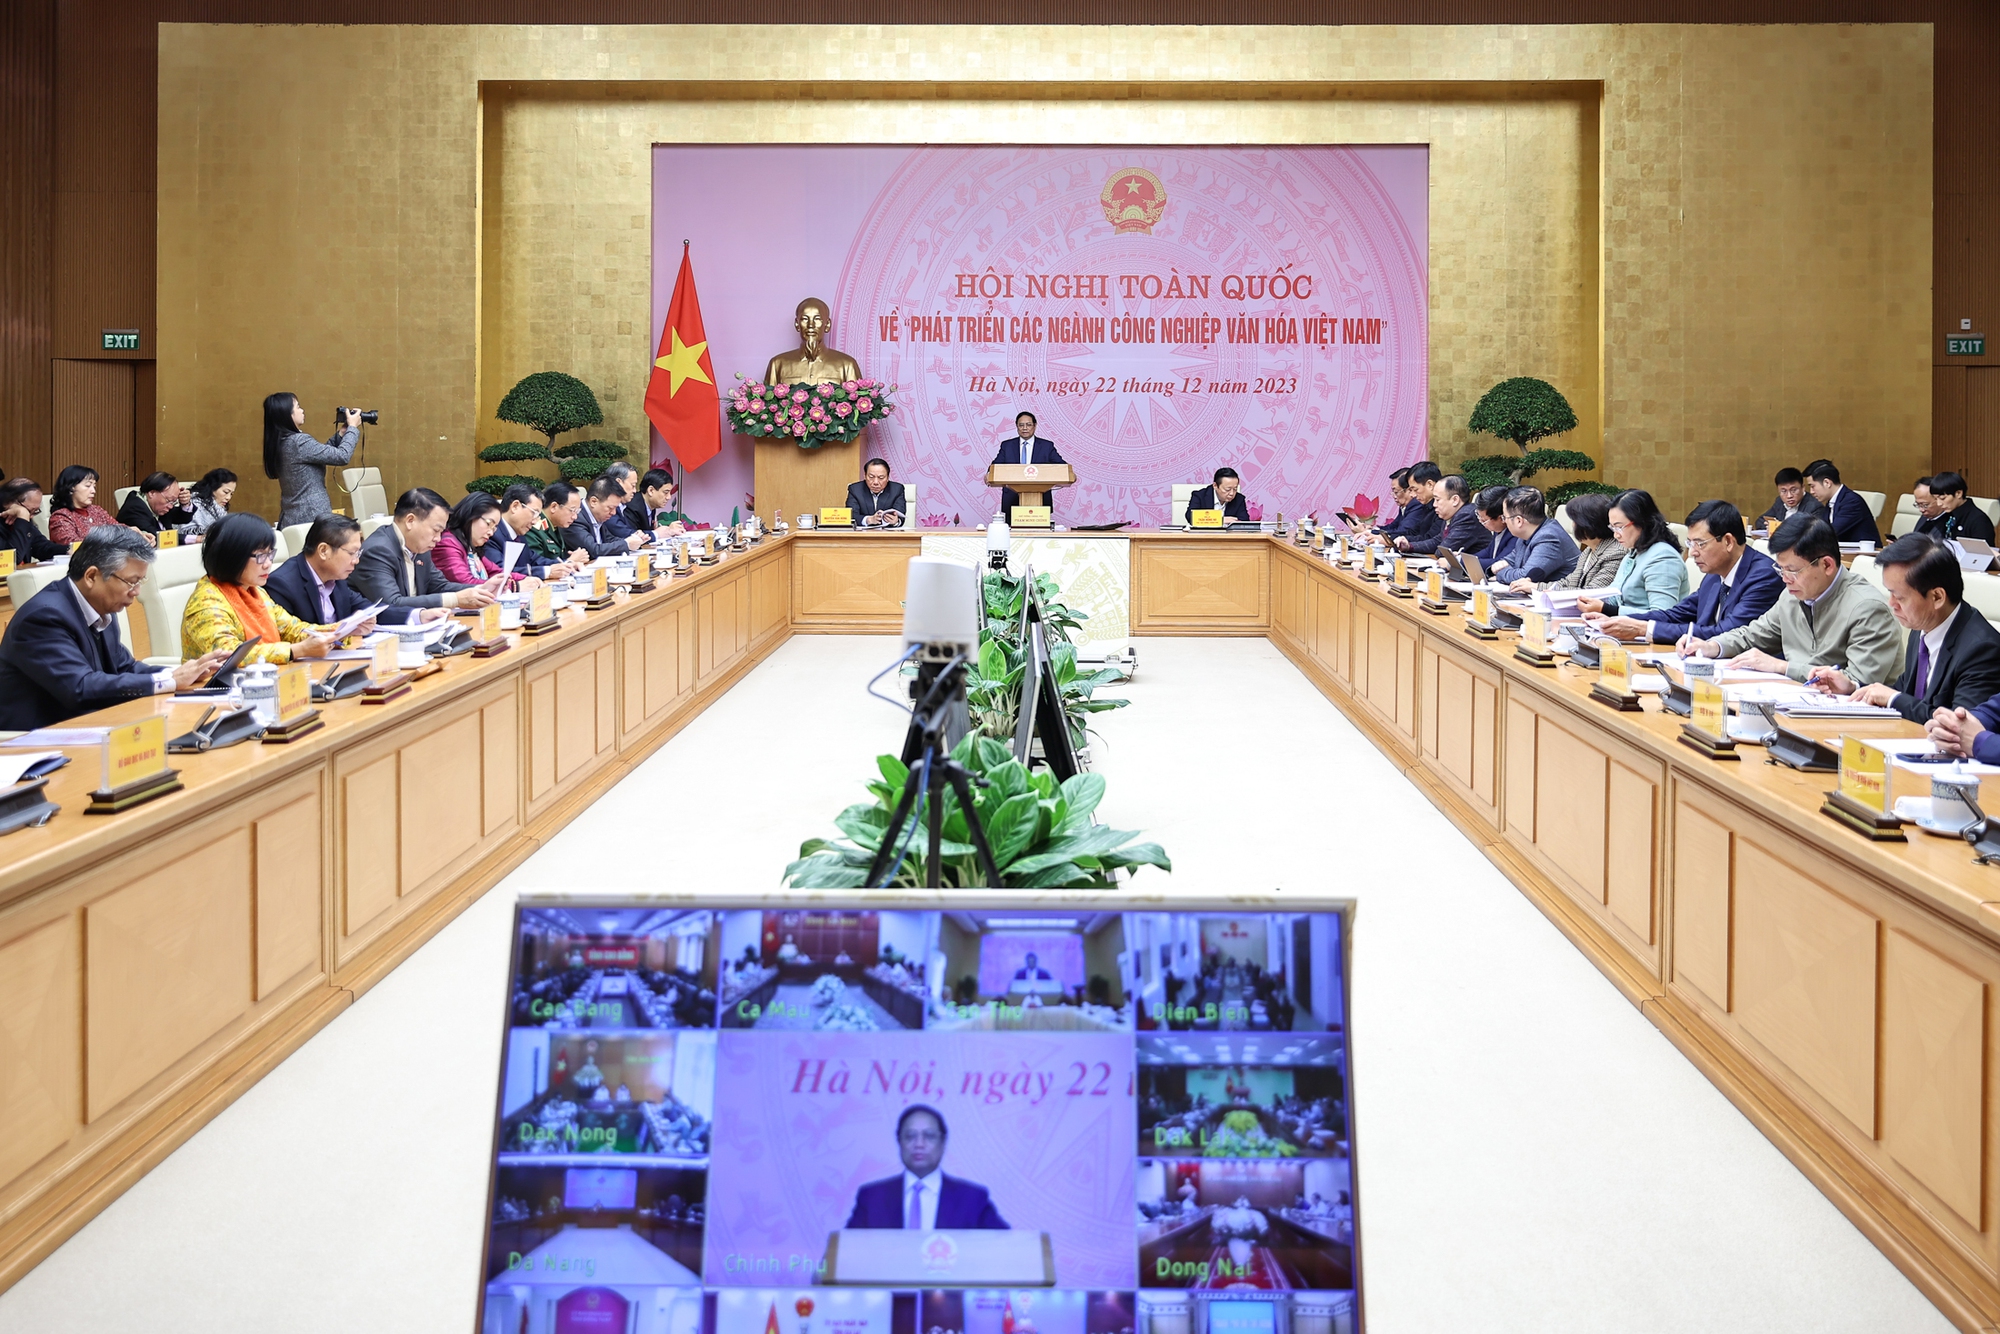 Thủ tướng Chính phủ Phạm Minh Chính chủ trì Hội nghị toàn quốc về phát triển các ngành công nghiệp văn hóa Việt Nam - Ảnh: VGP/Nhật Bắc